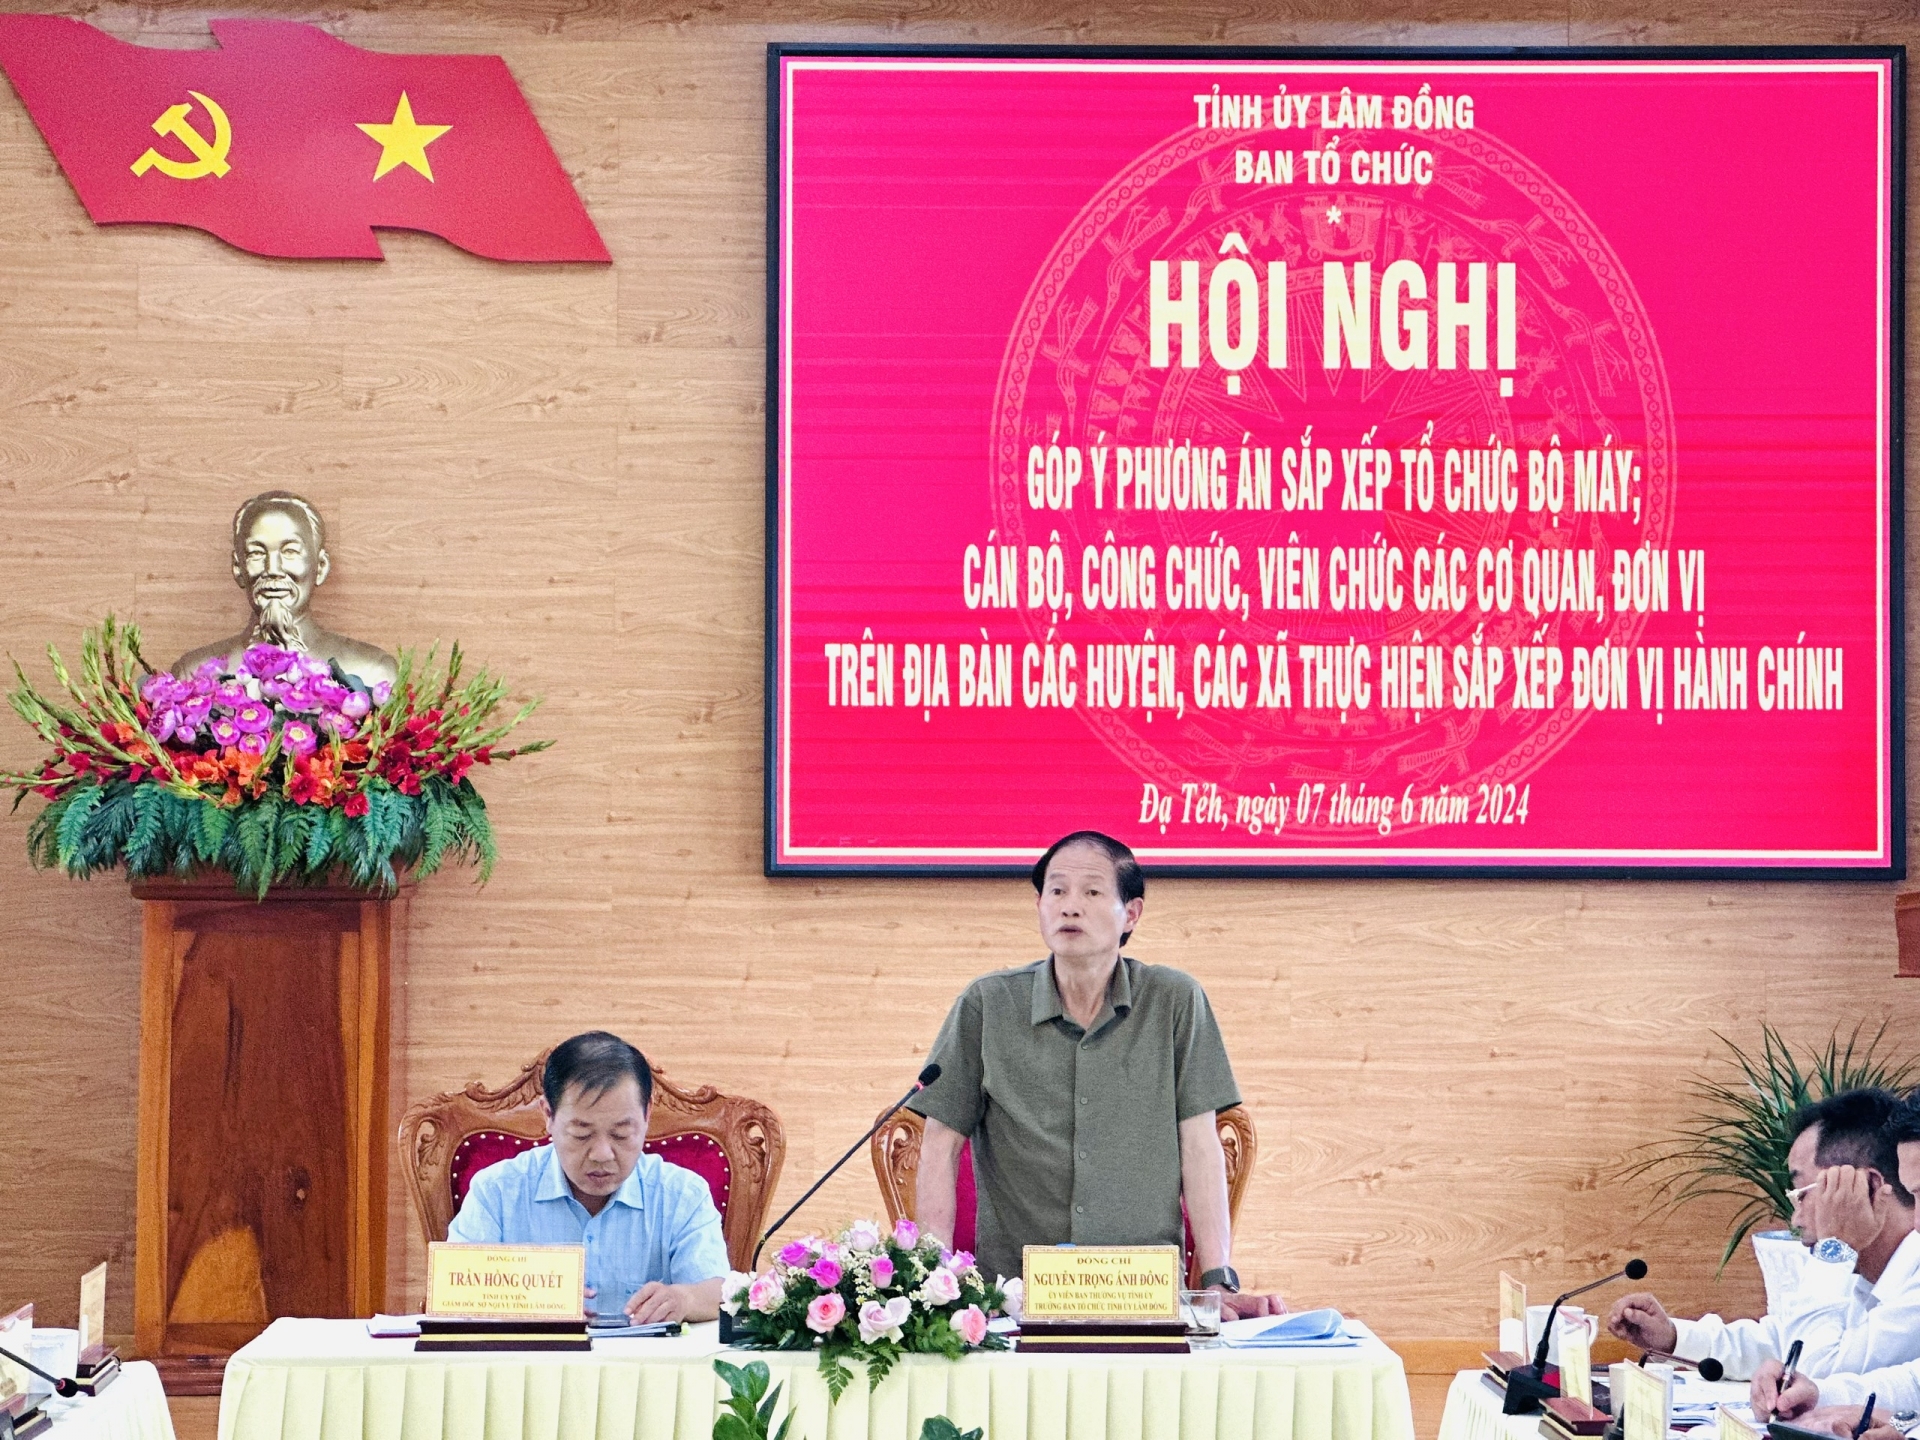 Đồng chí Nguyễn Trọng Ánh Đông - Ủy viên Ban Thường vụ, Trưởng ban Tổ chức Tỉnh ủy phát biểu kết luận Hội nghị